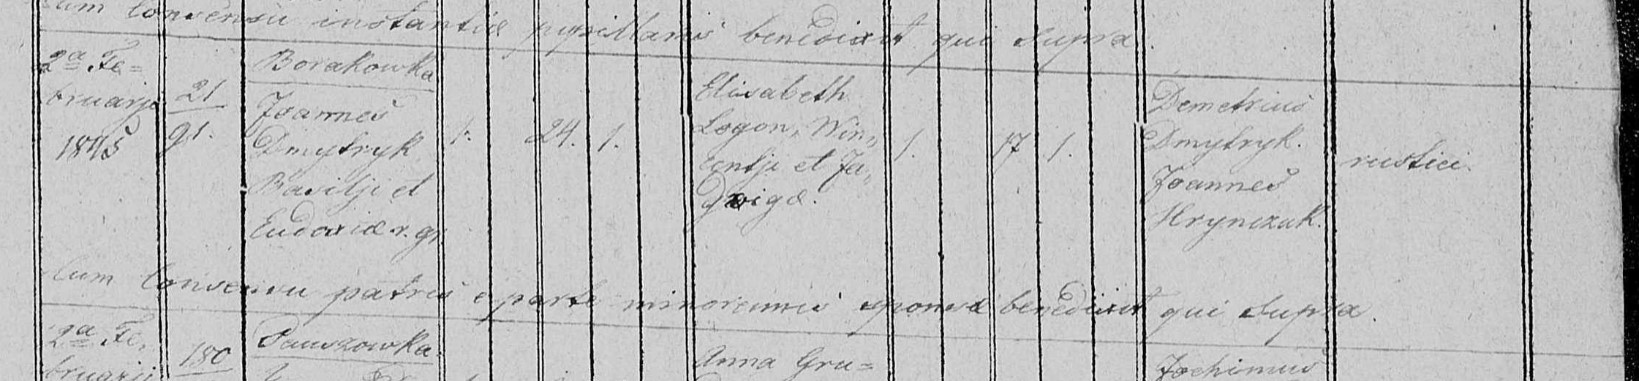 Akt ślubu Jana Dmytryka i Elżbiety Logon 1845